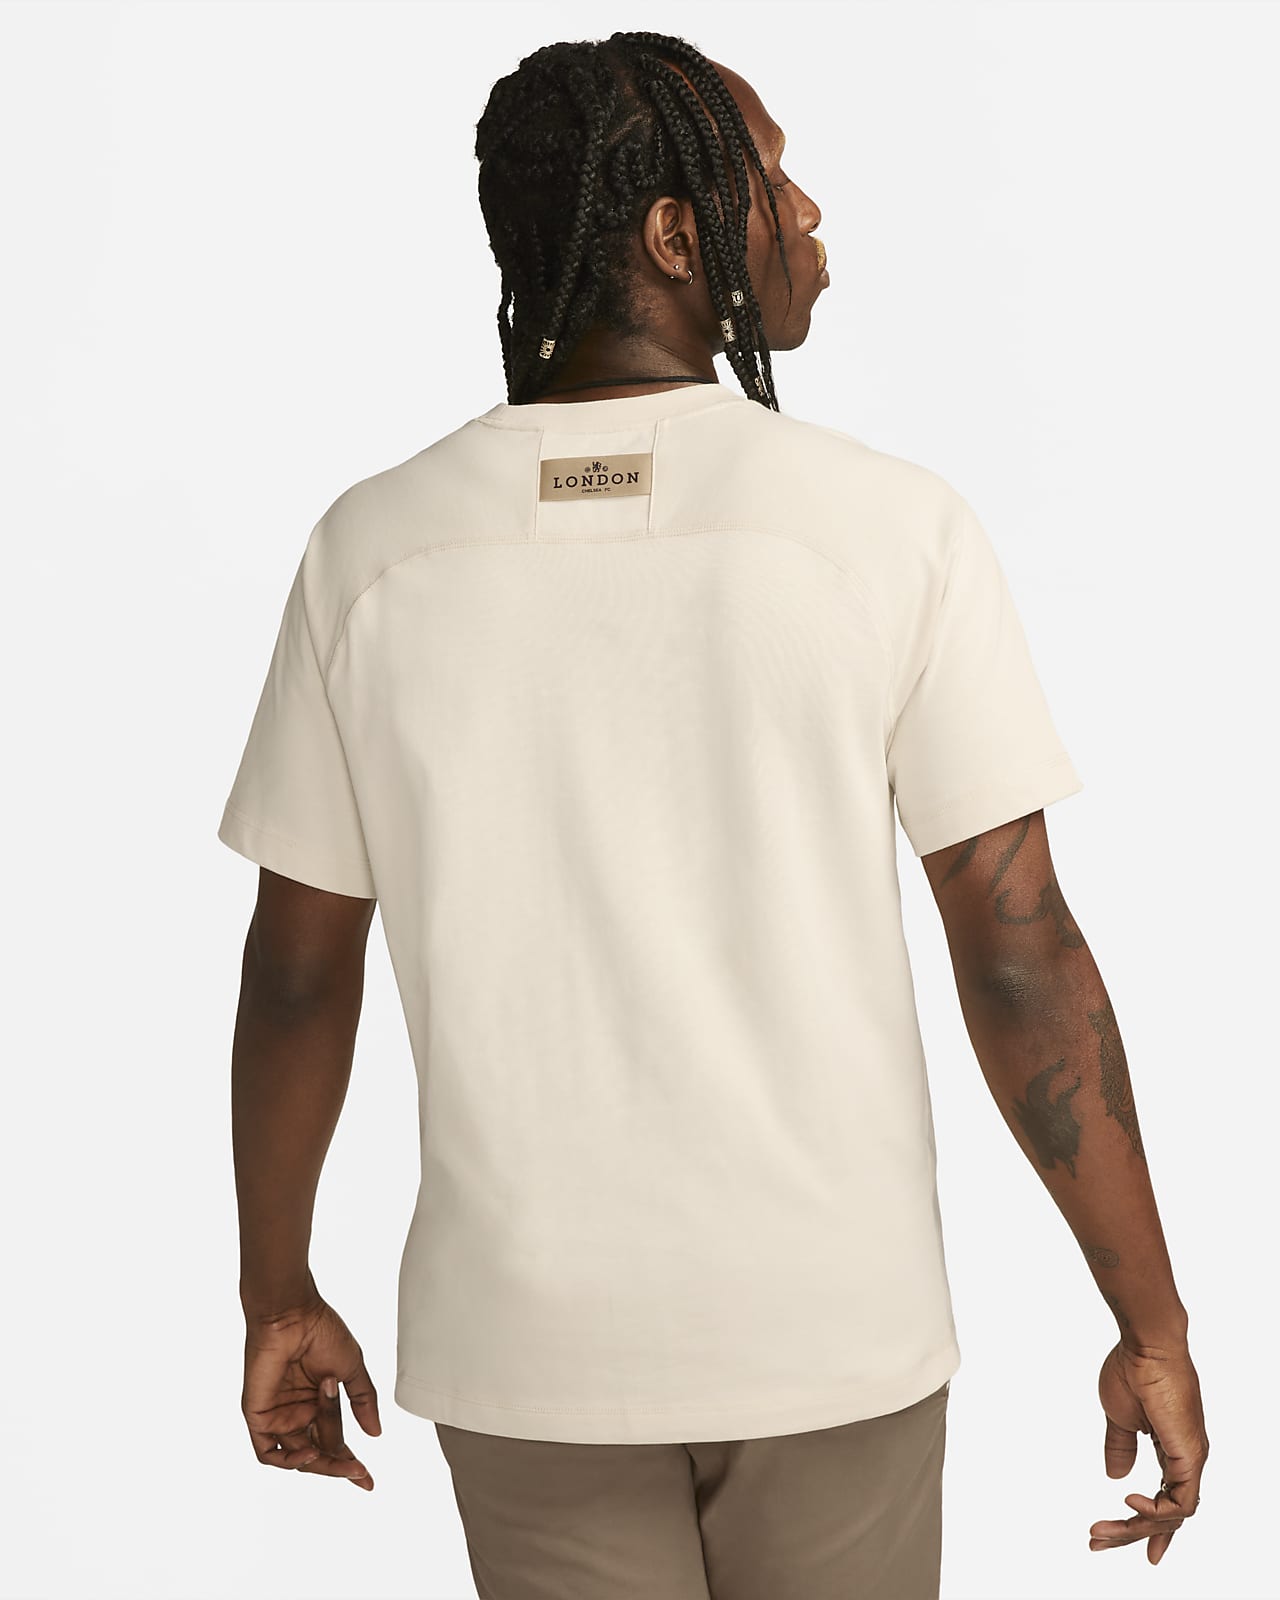 Louis Vuitton Black Men T Shirt Chest Pocket Size M